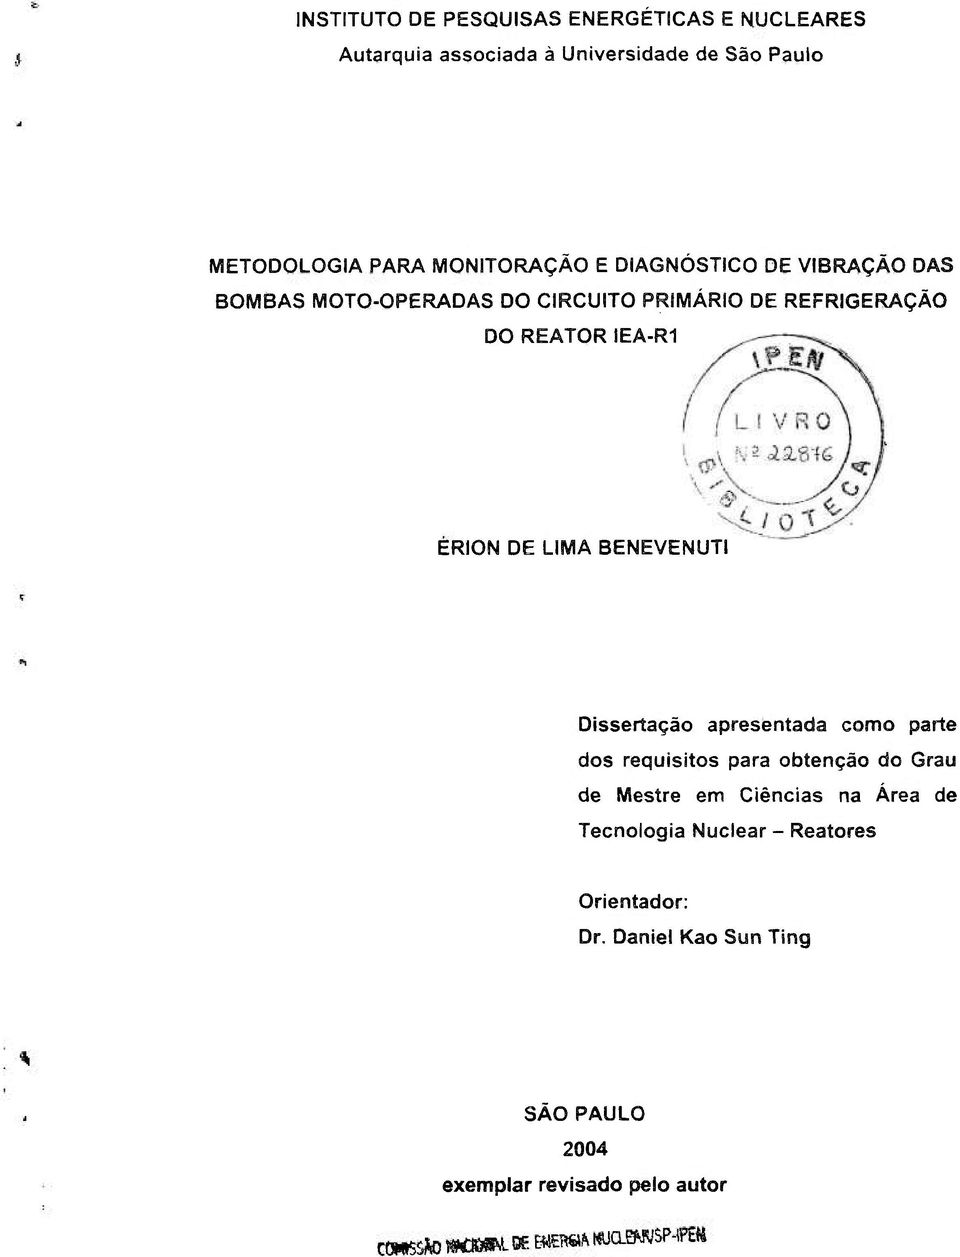 ERION DE LIMA BENEVENUTI Dissertação apresentada como parte dos requisitos para obtenção do Grau de Mestre em